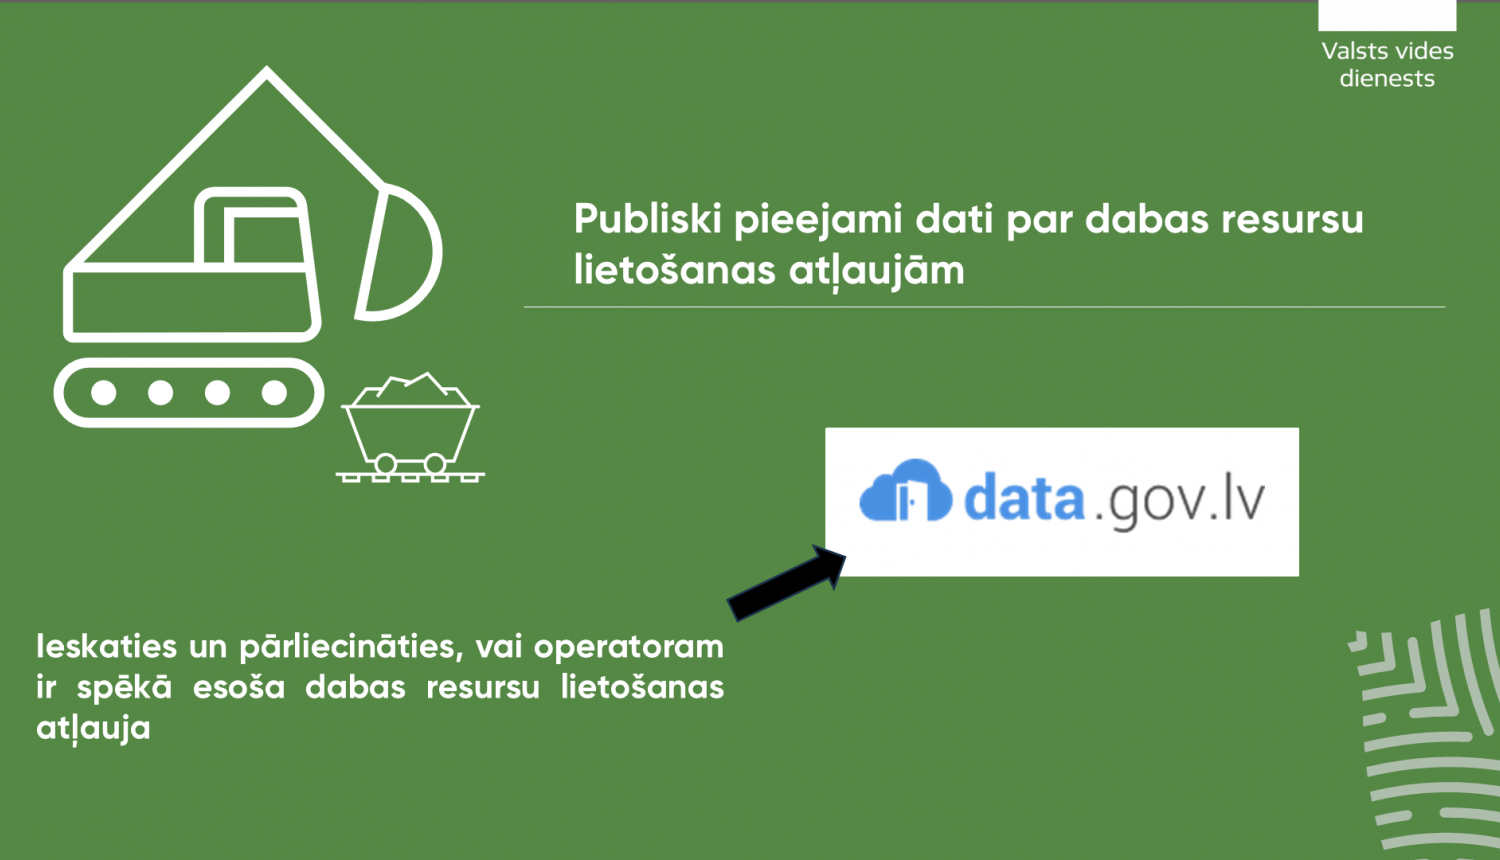 VVD publicē dabas resursu lietošanas atļauju datus atvērto datu formātā